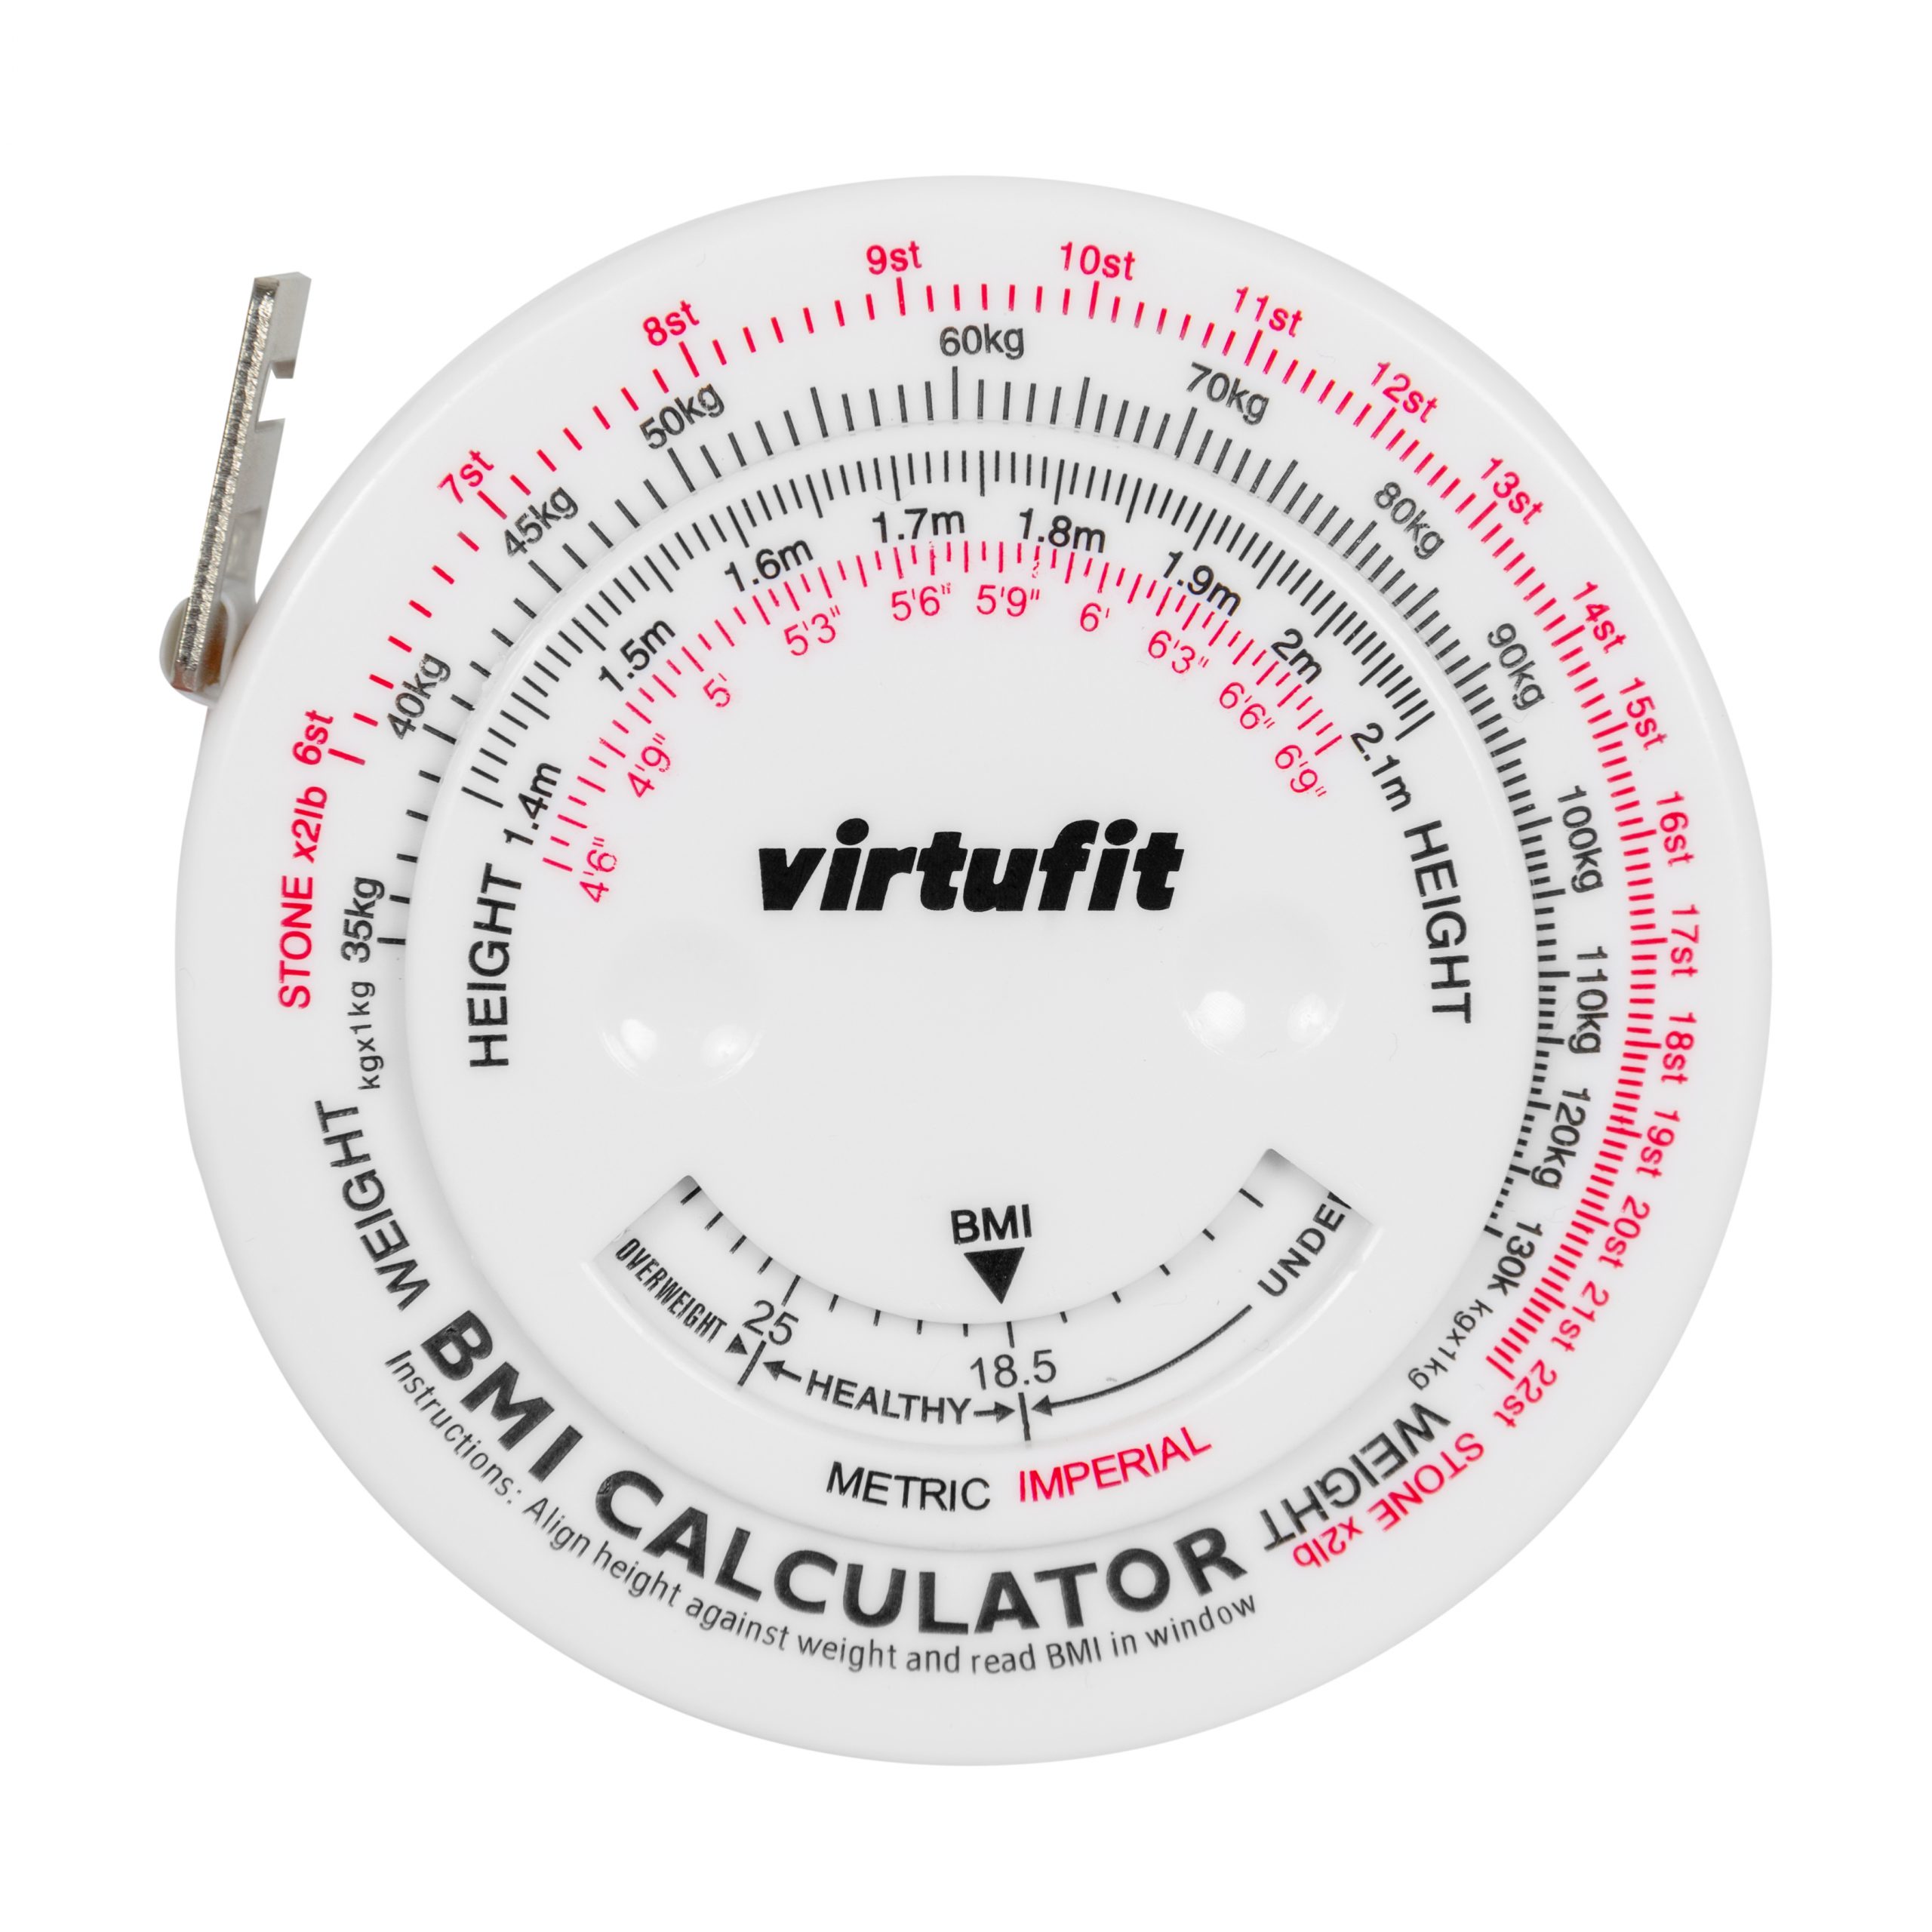 Kleverig Regeringsverordening Altijd VirtuFit Omtrekmeter met BMI Calculator - 150 cm - Virtufit